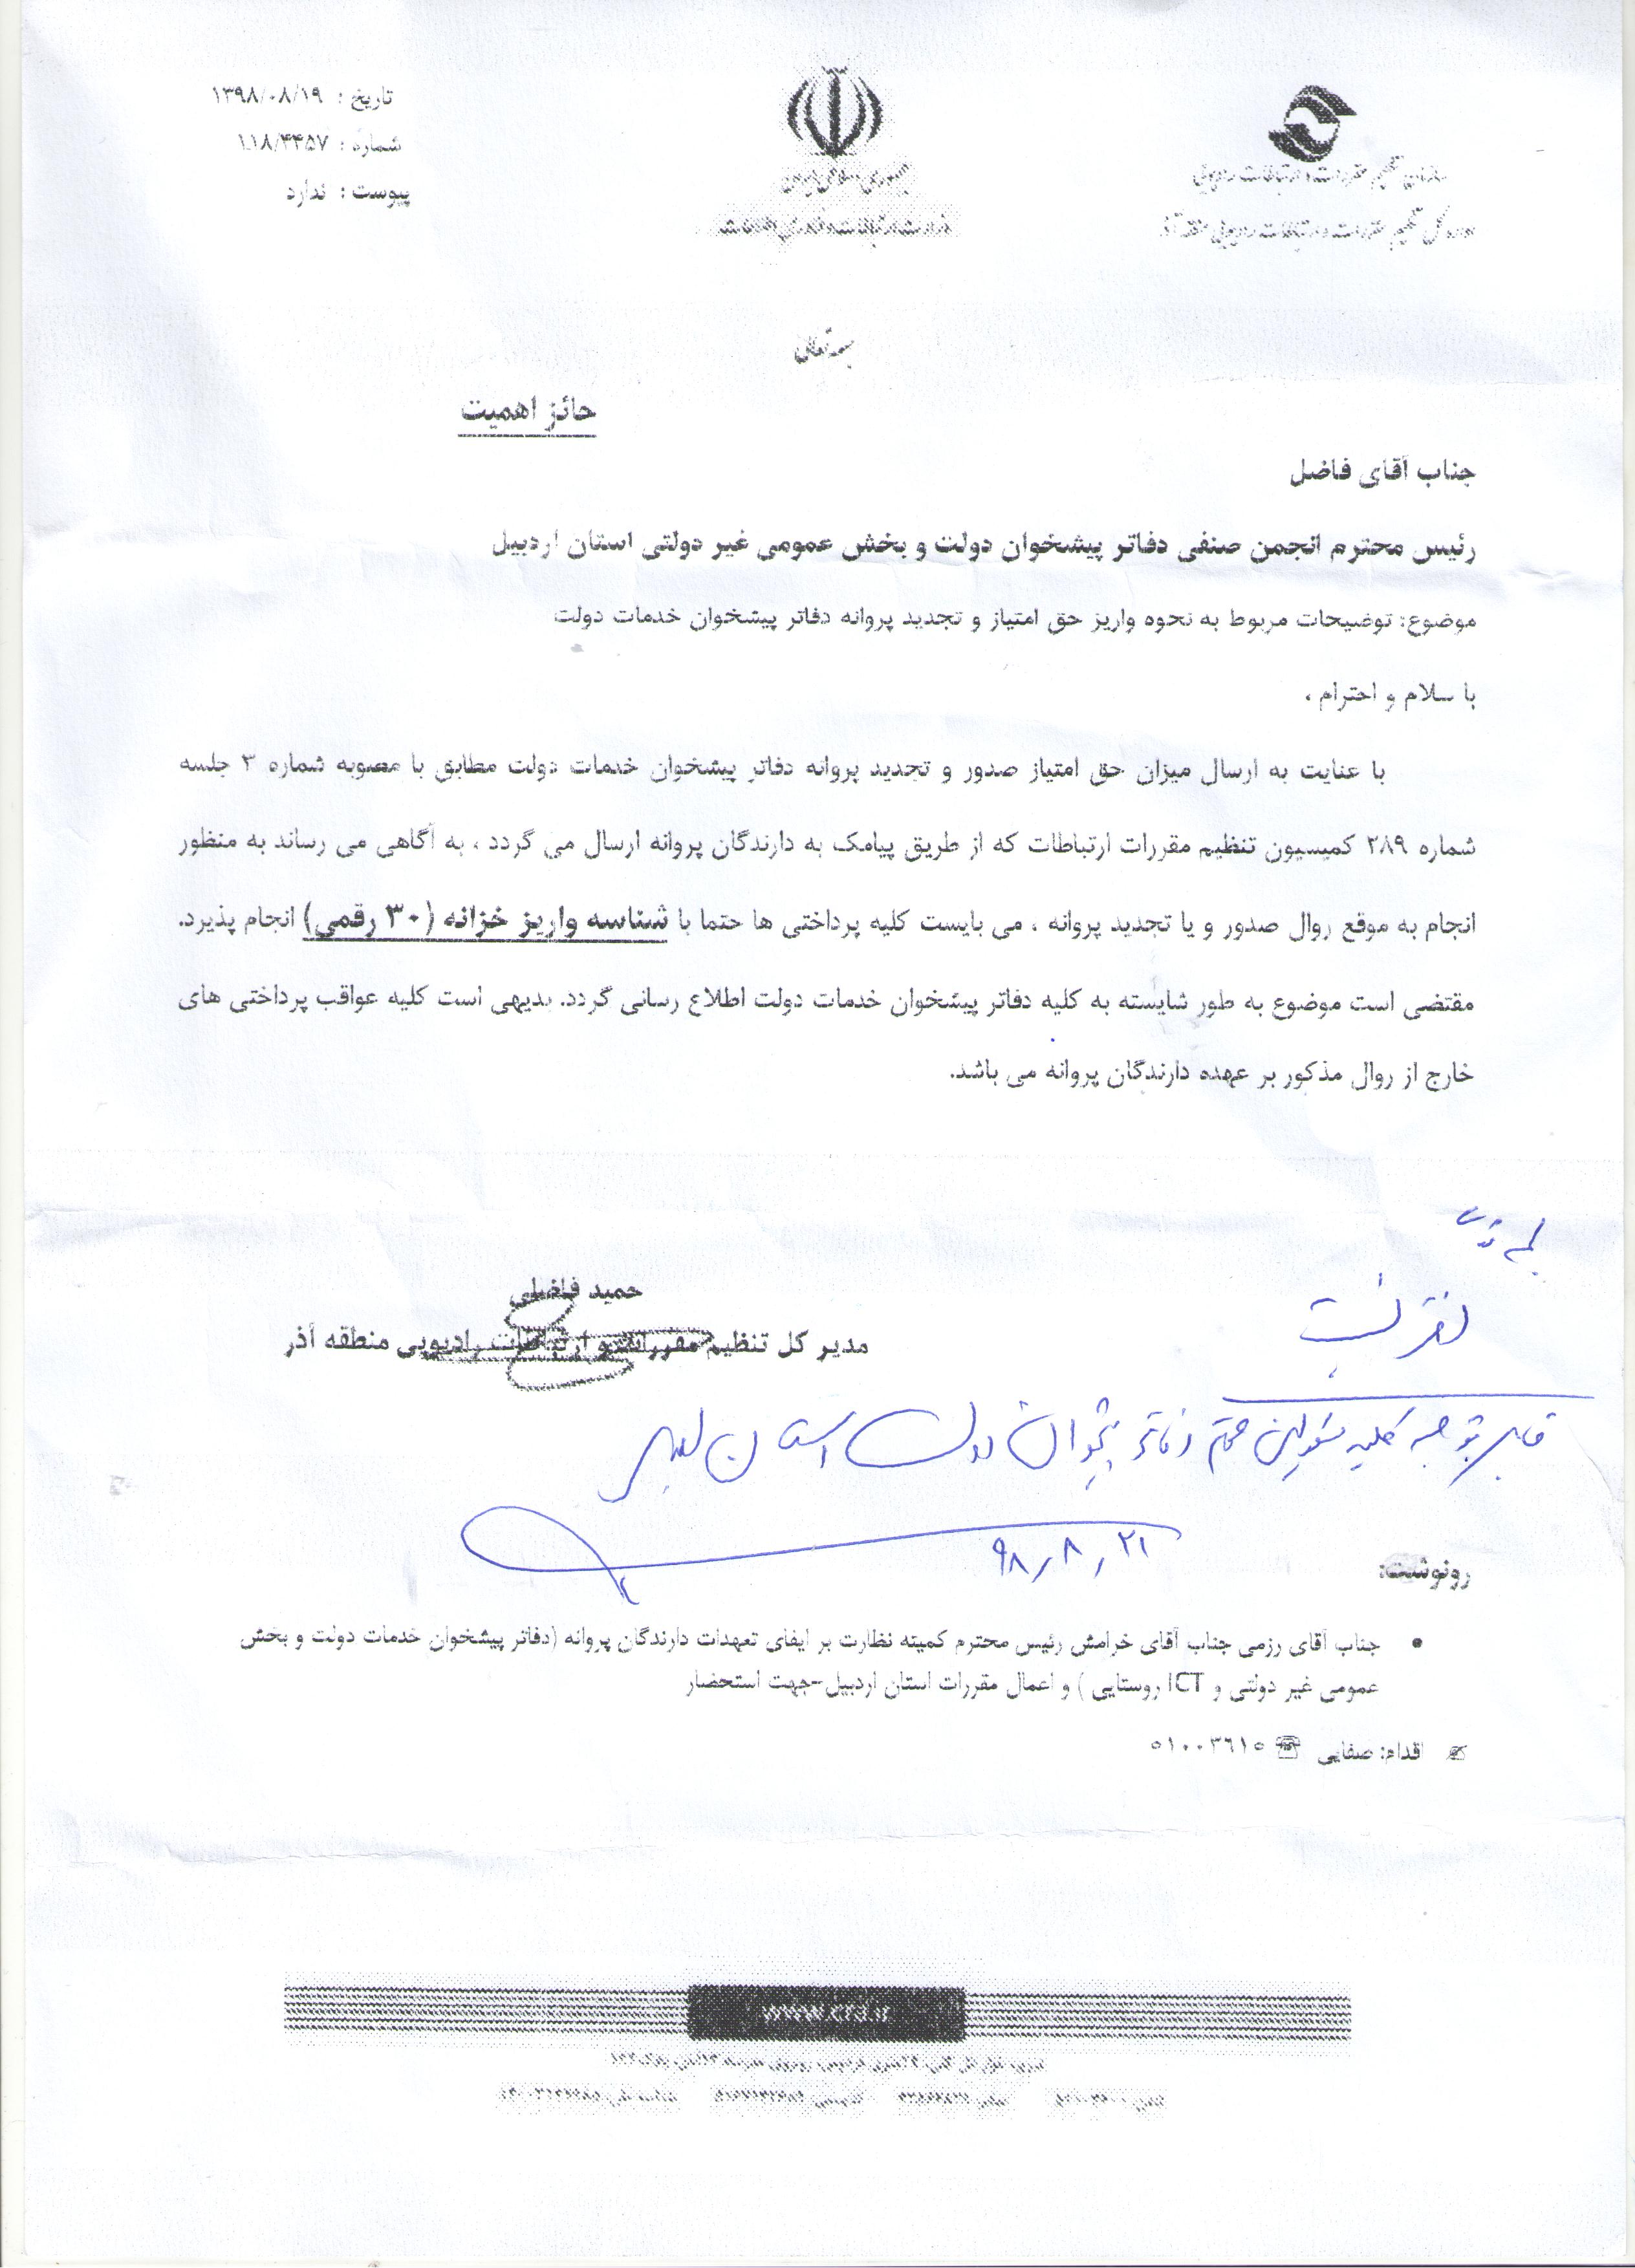 سازمان تنظیم مقررات و ارتباطات رادیویی منطقه آذر( نحوه واریز حق امتیاز و تجدید پروانه دفاتر پیشخوان)